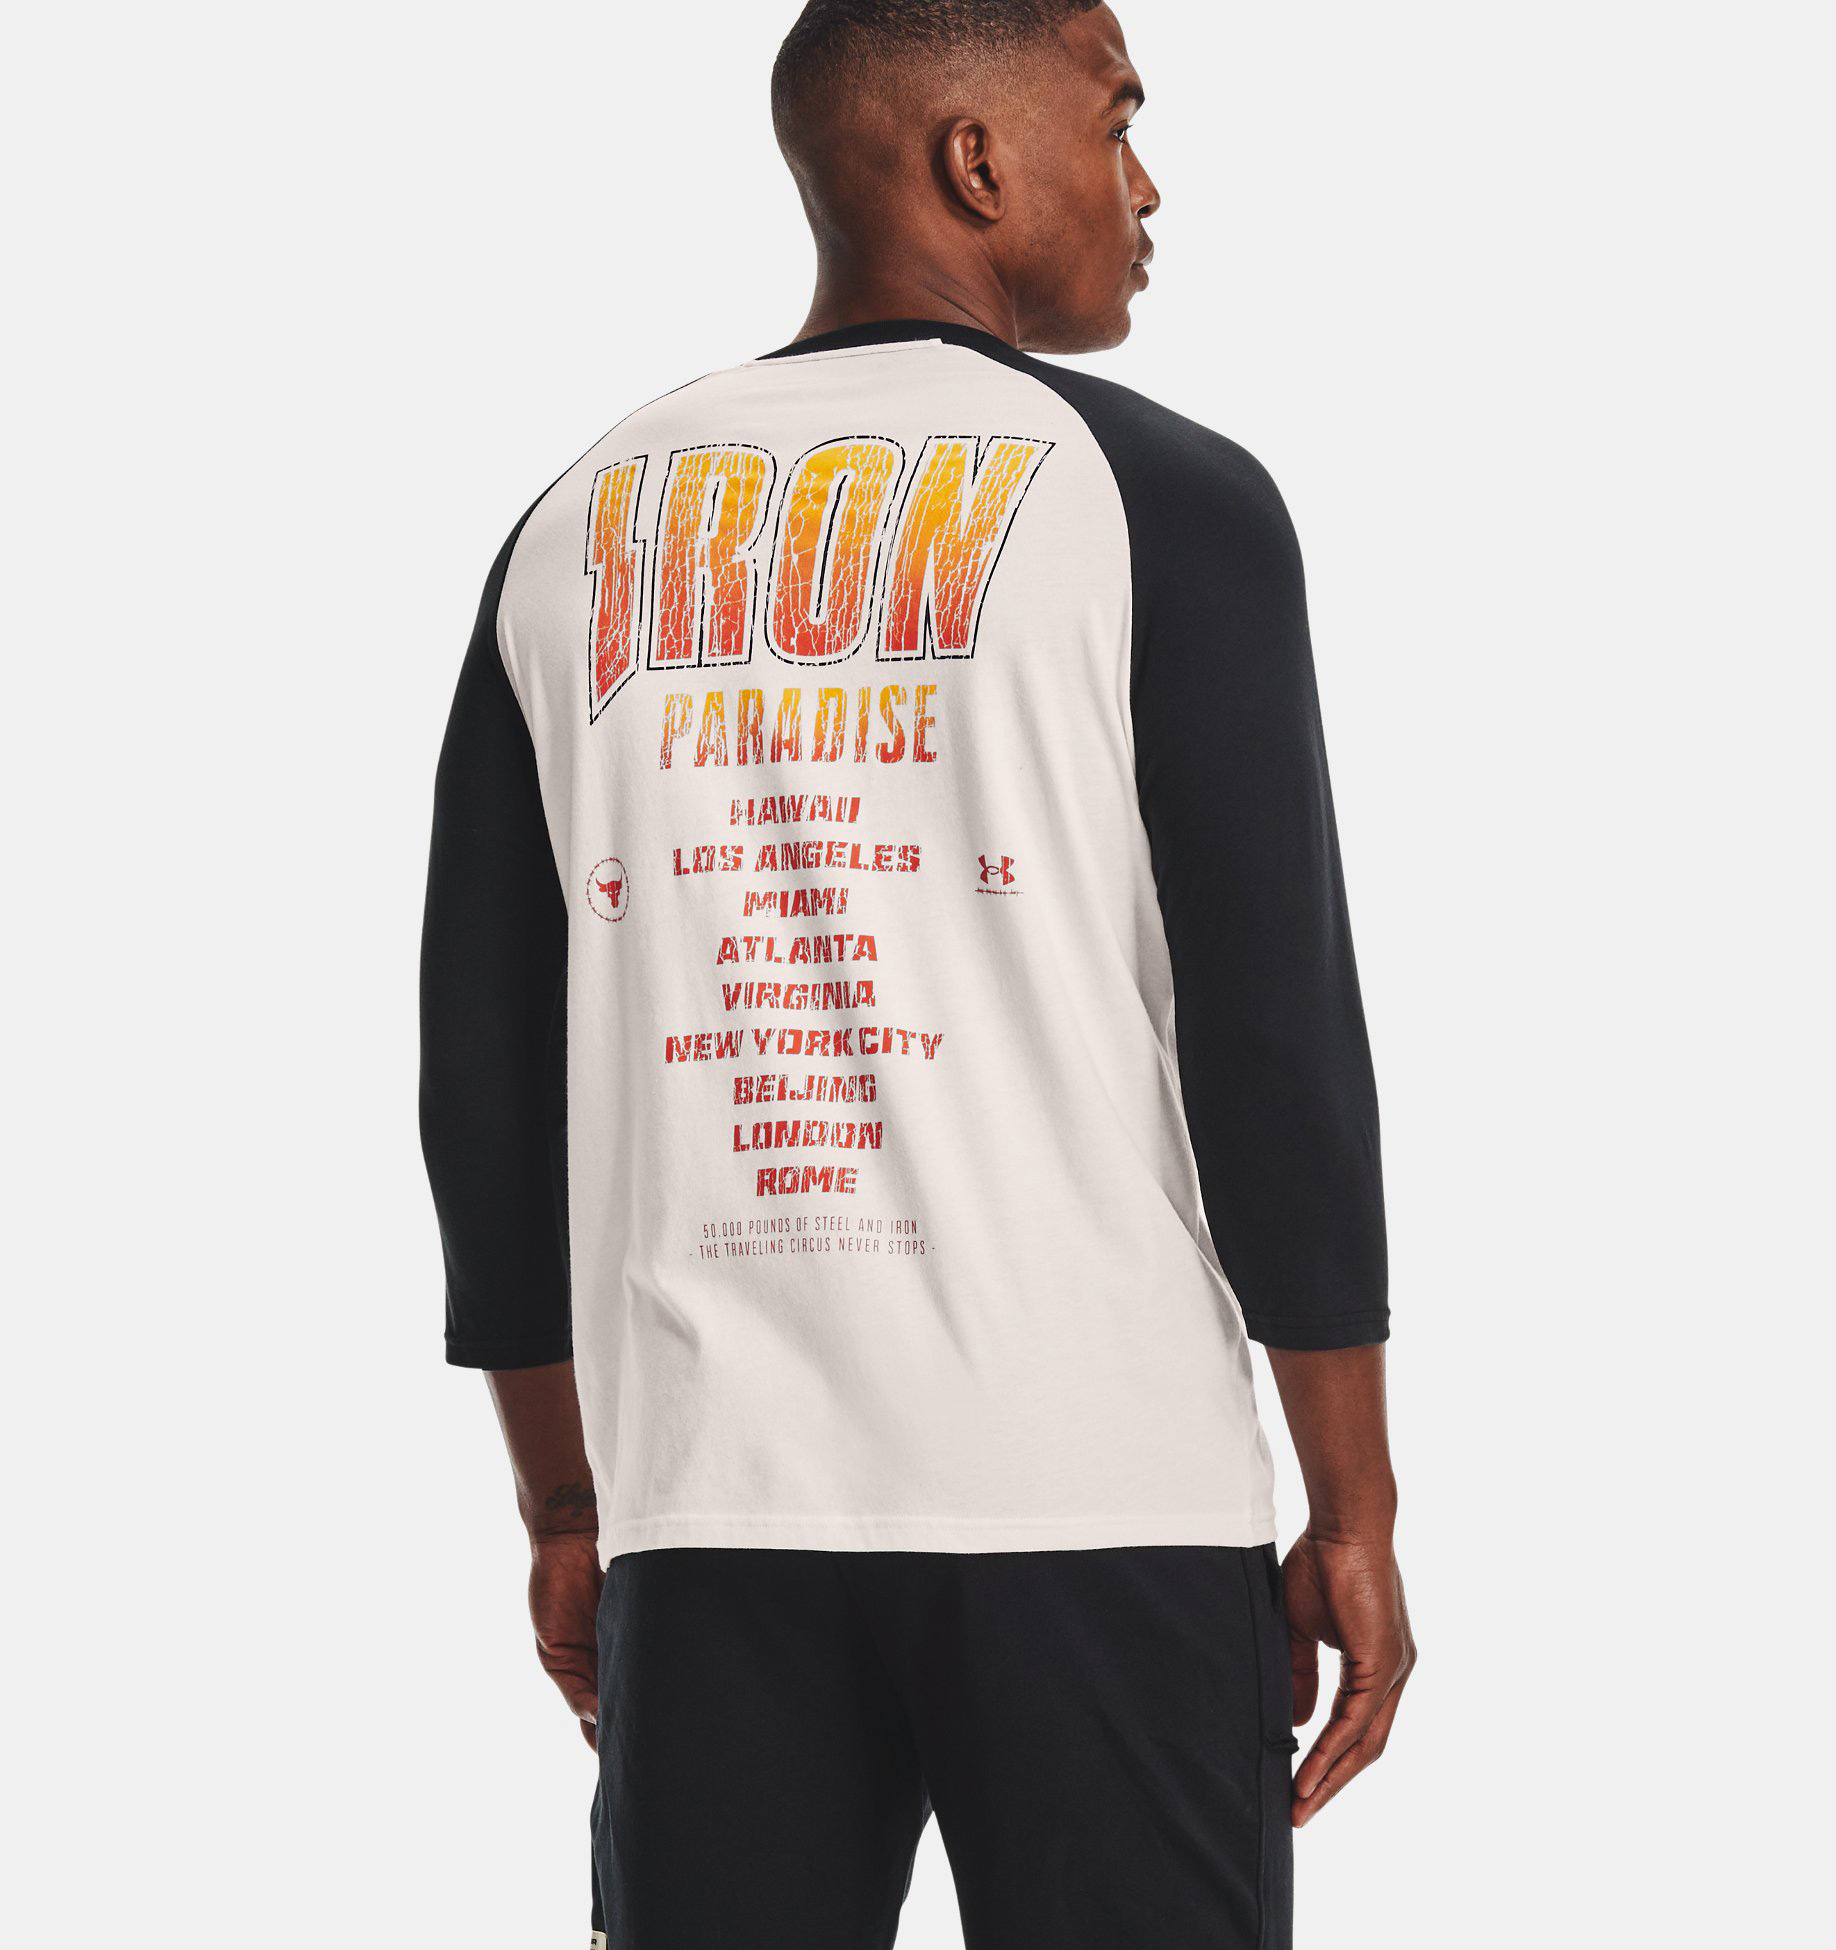 project-rock-iron-paradise-tour-raglan-shirt-2